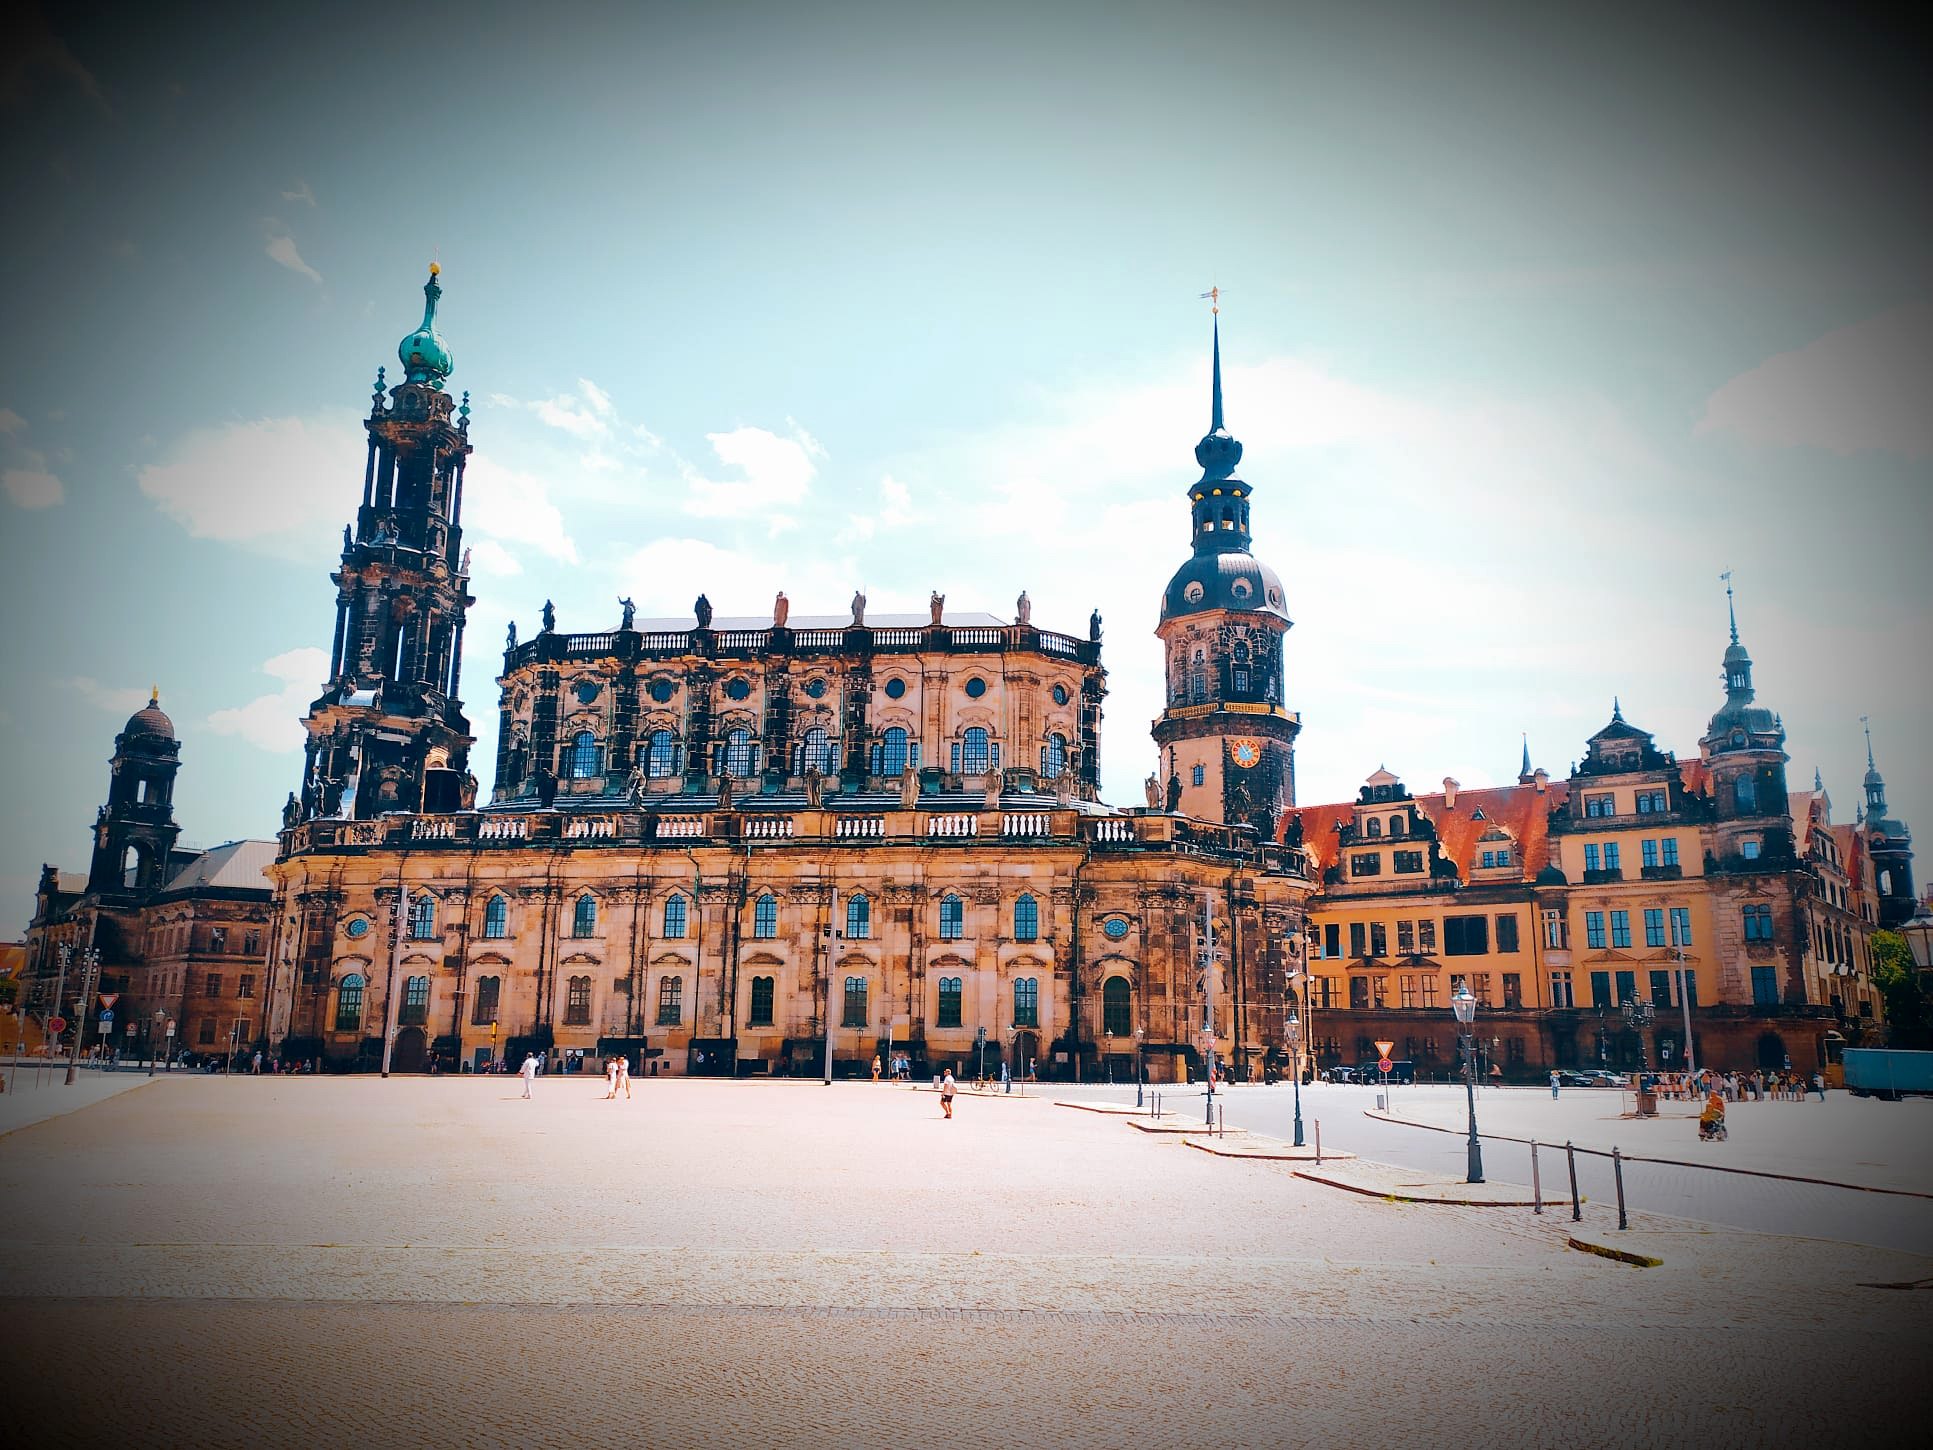 Cosa vedere a Dresda - Il Castello (foto M. Cuomo - NonSoloRisparmio)